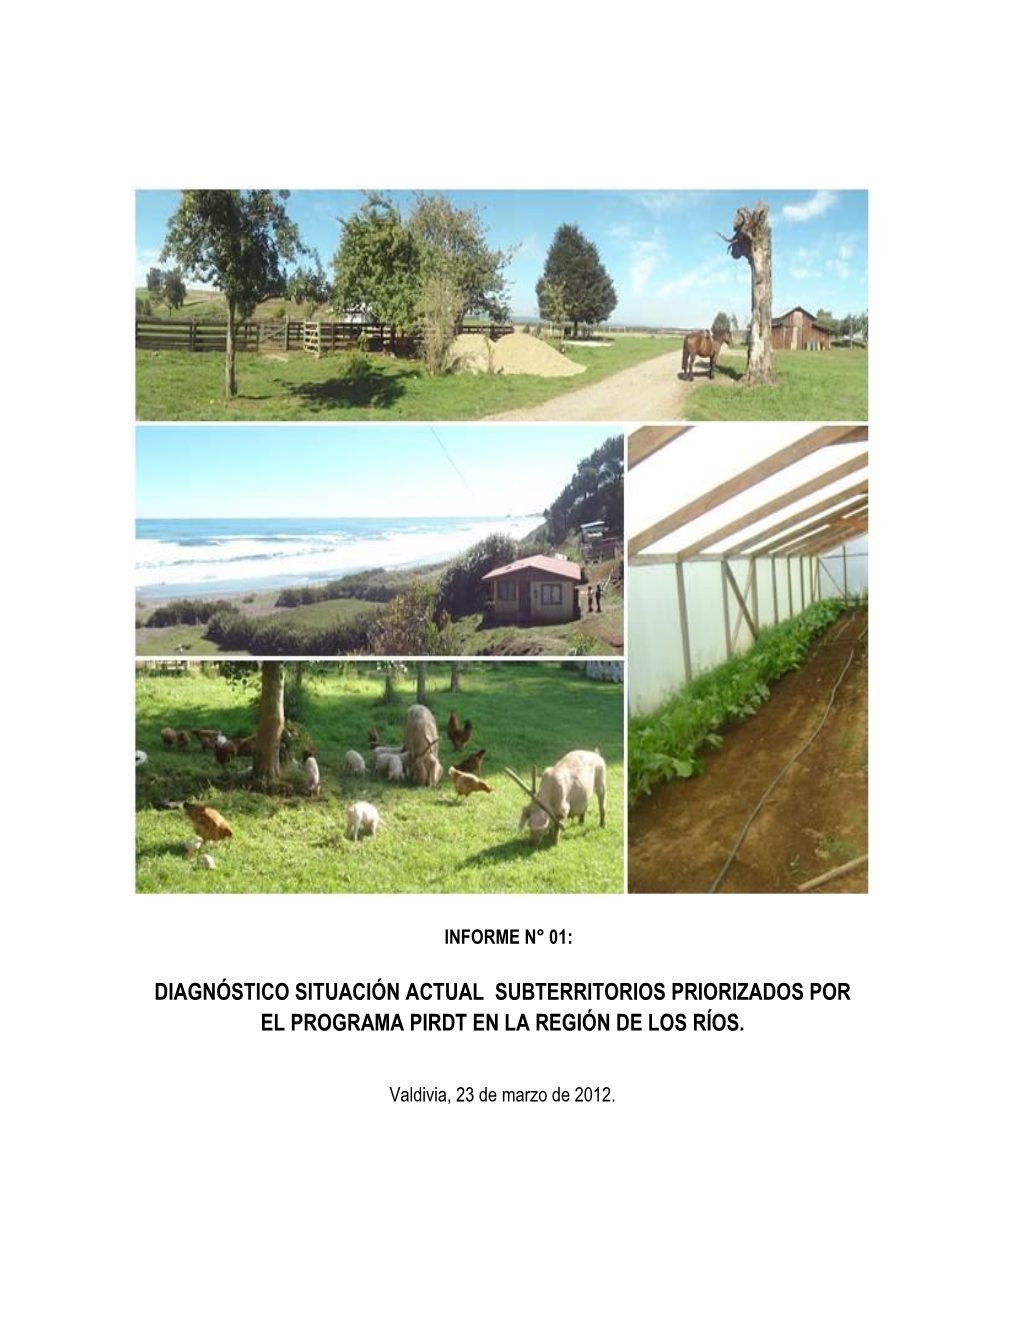 Informe N° 1 Diagnóstico Situación Actual Territorios Priorizados Programa PIRDT Región De Los Ríos